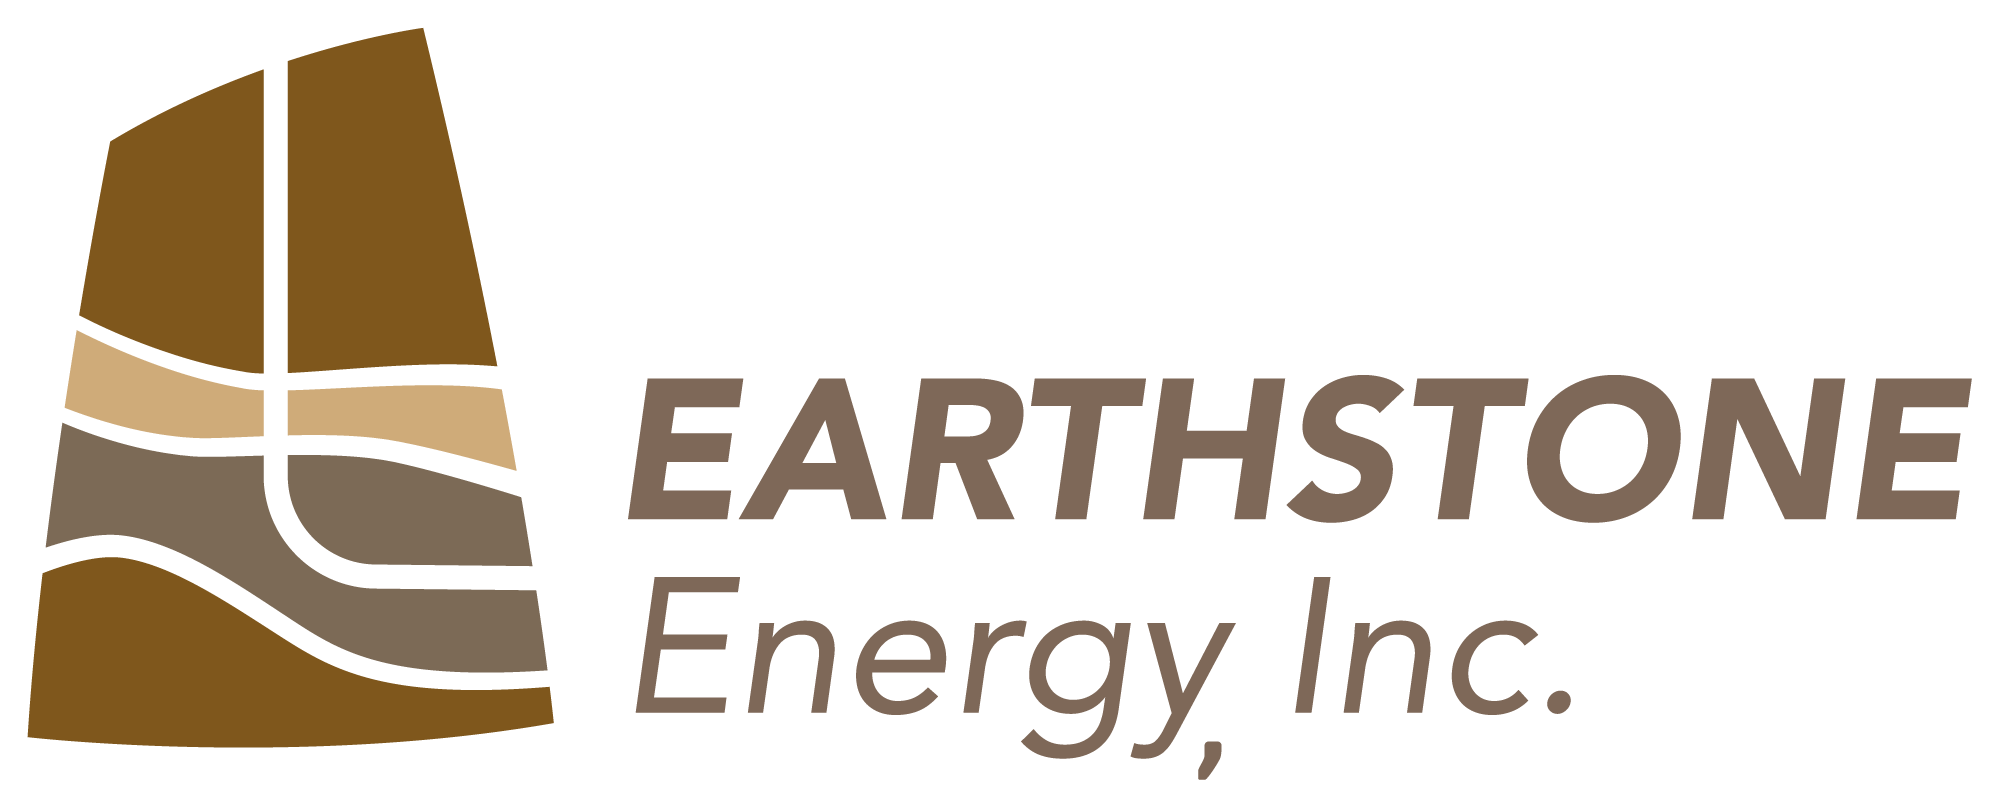 Earthstone Energy, Inc.